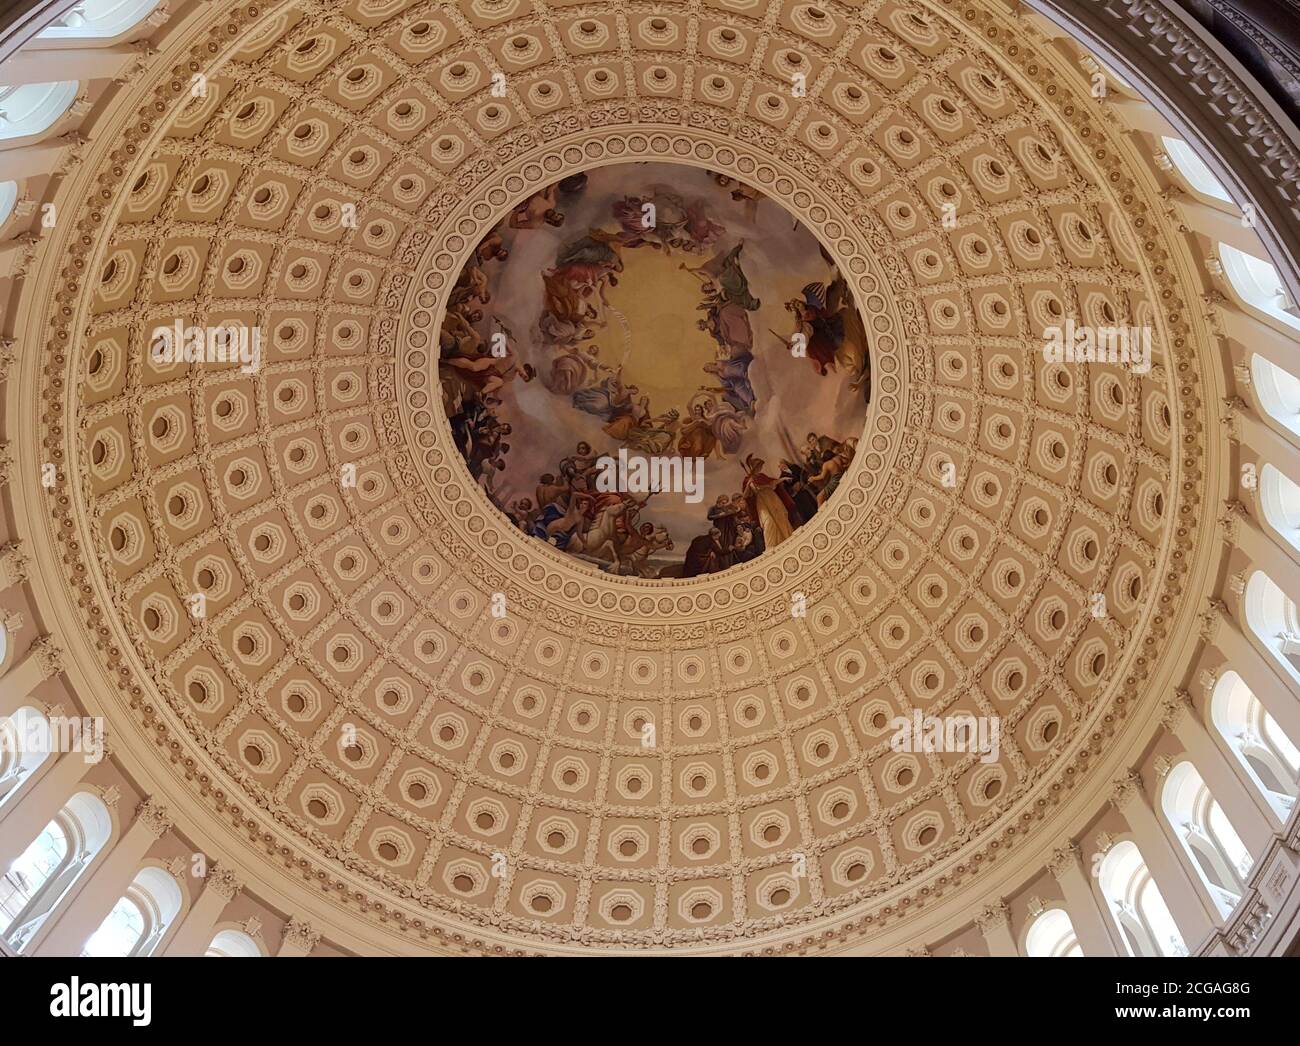 Die Apotheose von Washington, Fresko von Constantino Brumidi in der Kuppel der Rotunde des Kapitolgebäudes der Vereinigten Staaten, Washington D.C. Stockfoto